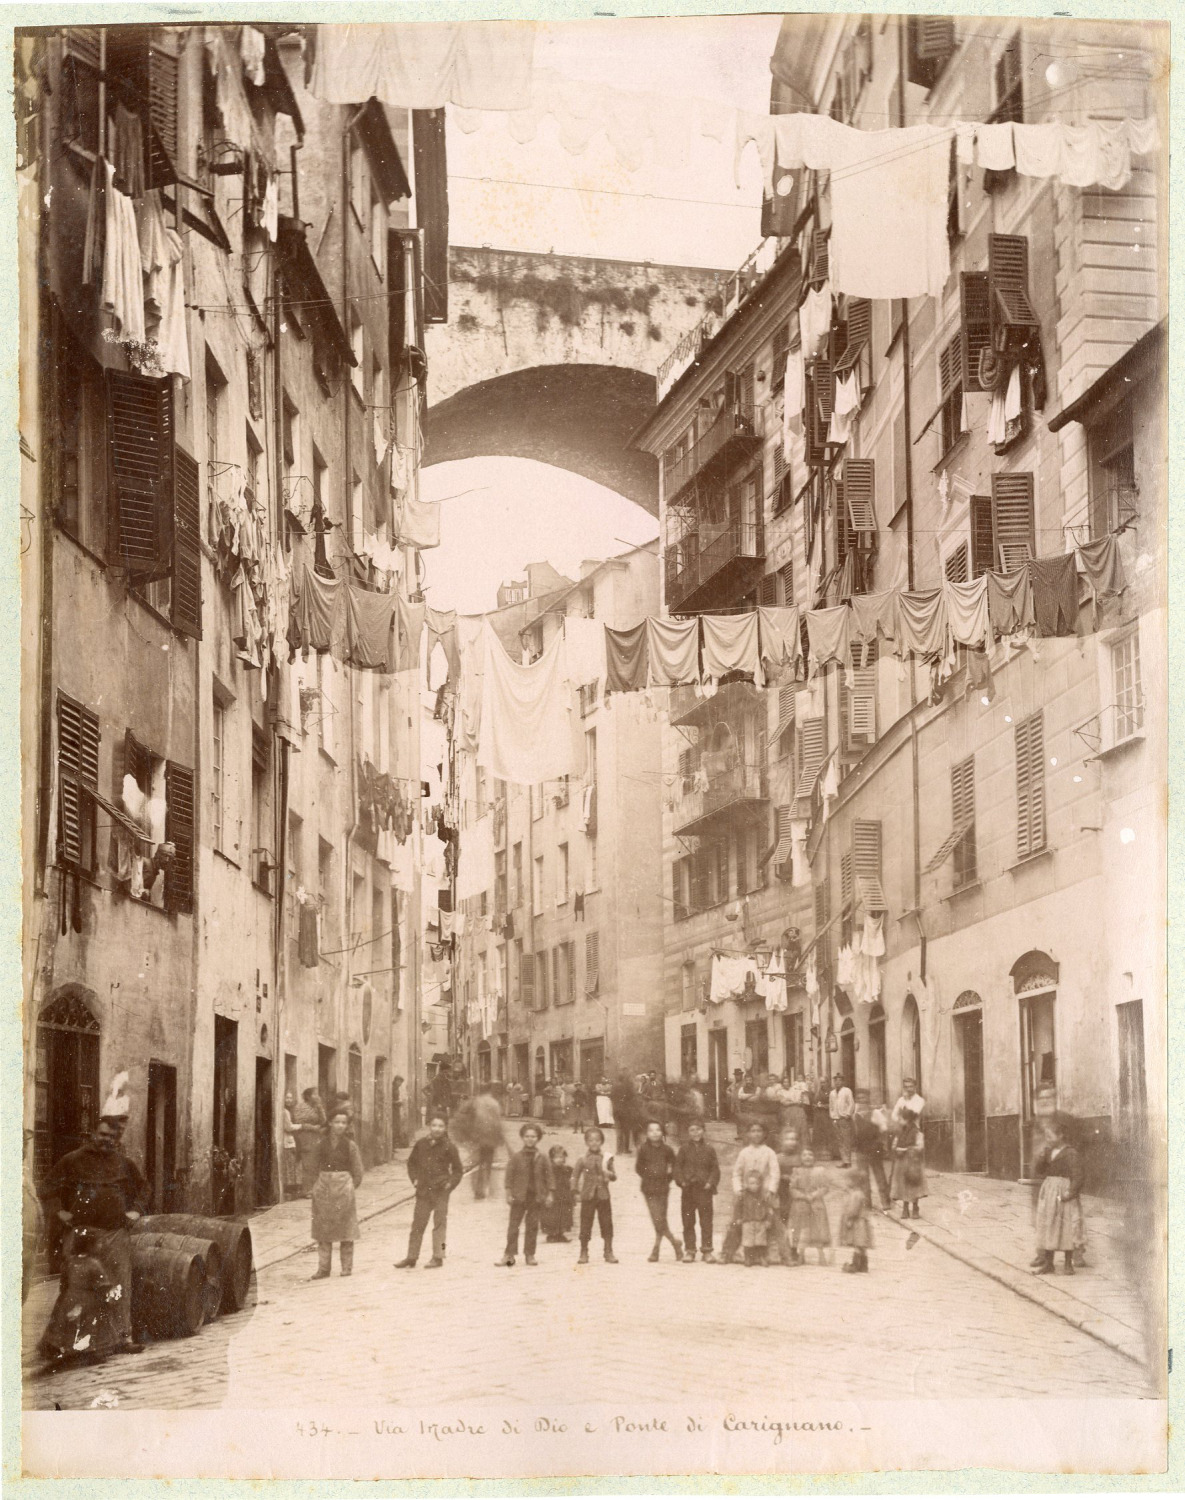 Italy, Genoa, Via Madre di Dio and Ponte di Carignano vintage albumen print. Vi